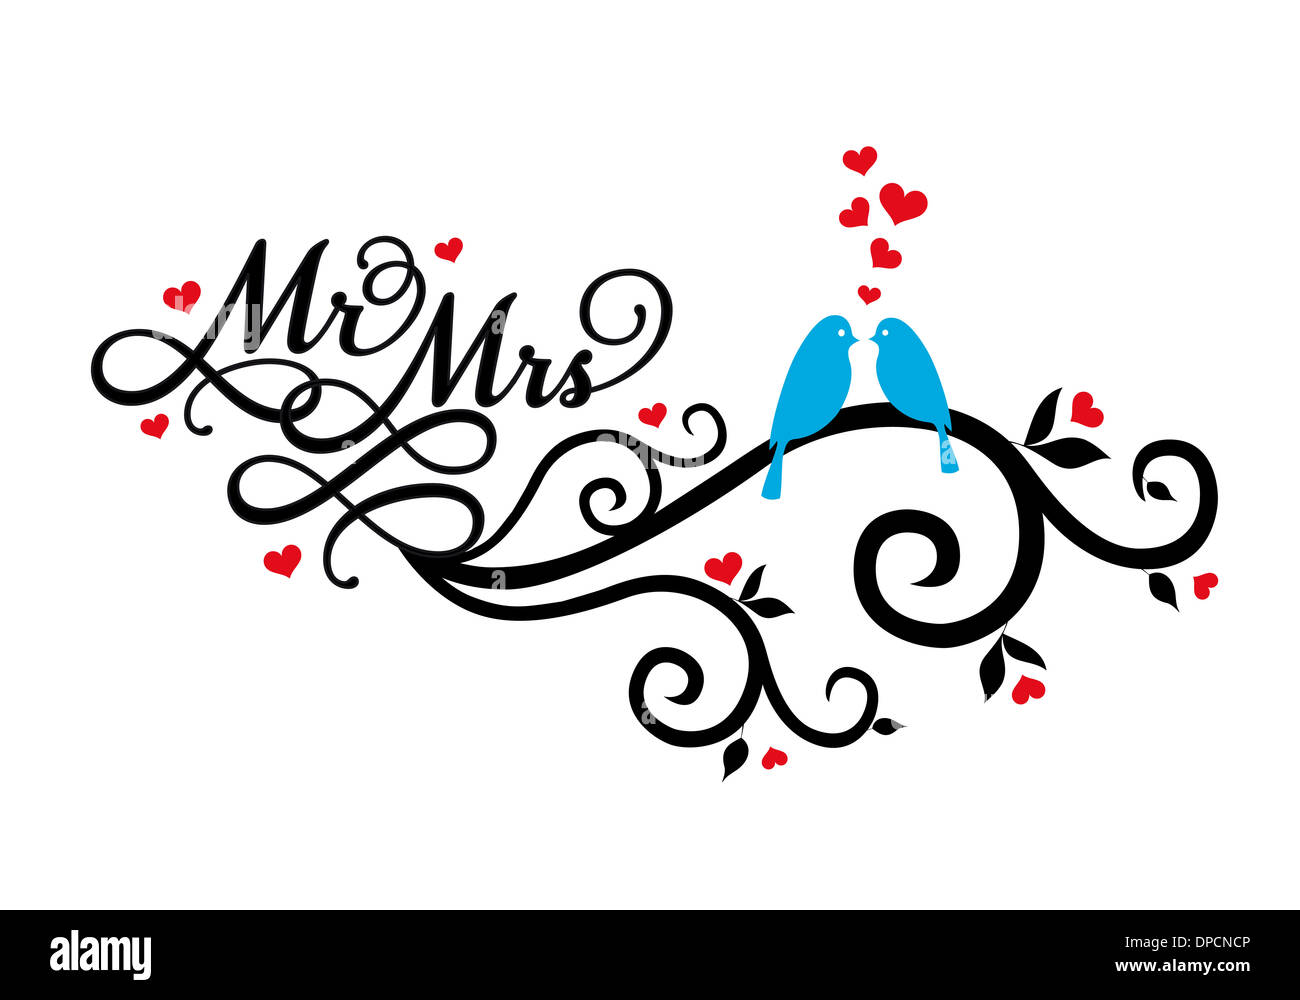 Herr und Frau, Hochzeit Vögel auf Wirbel mit roten Herzen Stockfoto